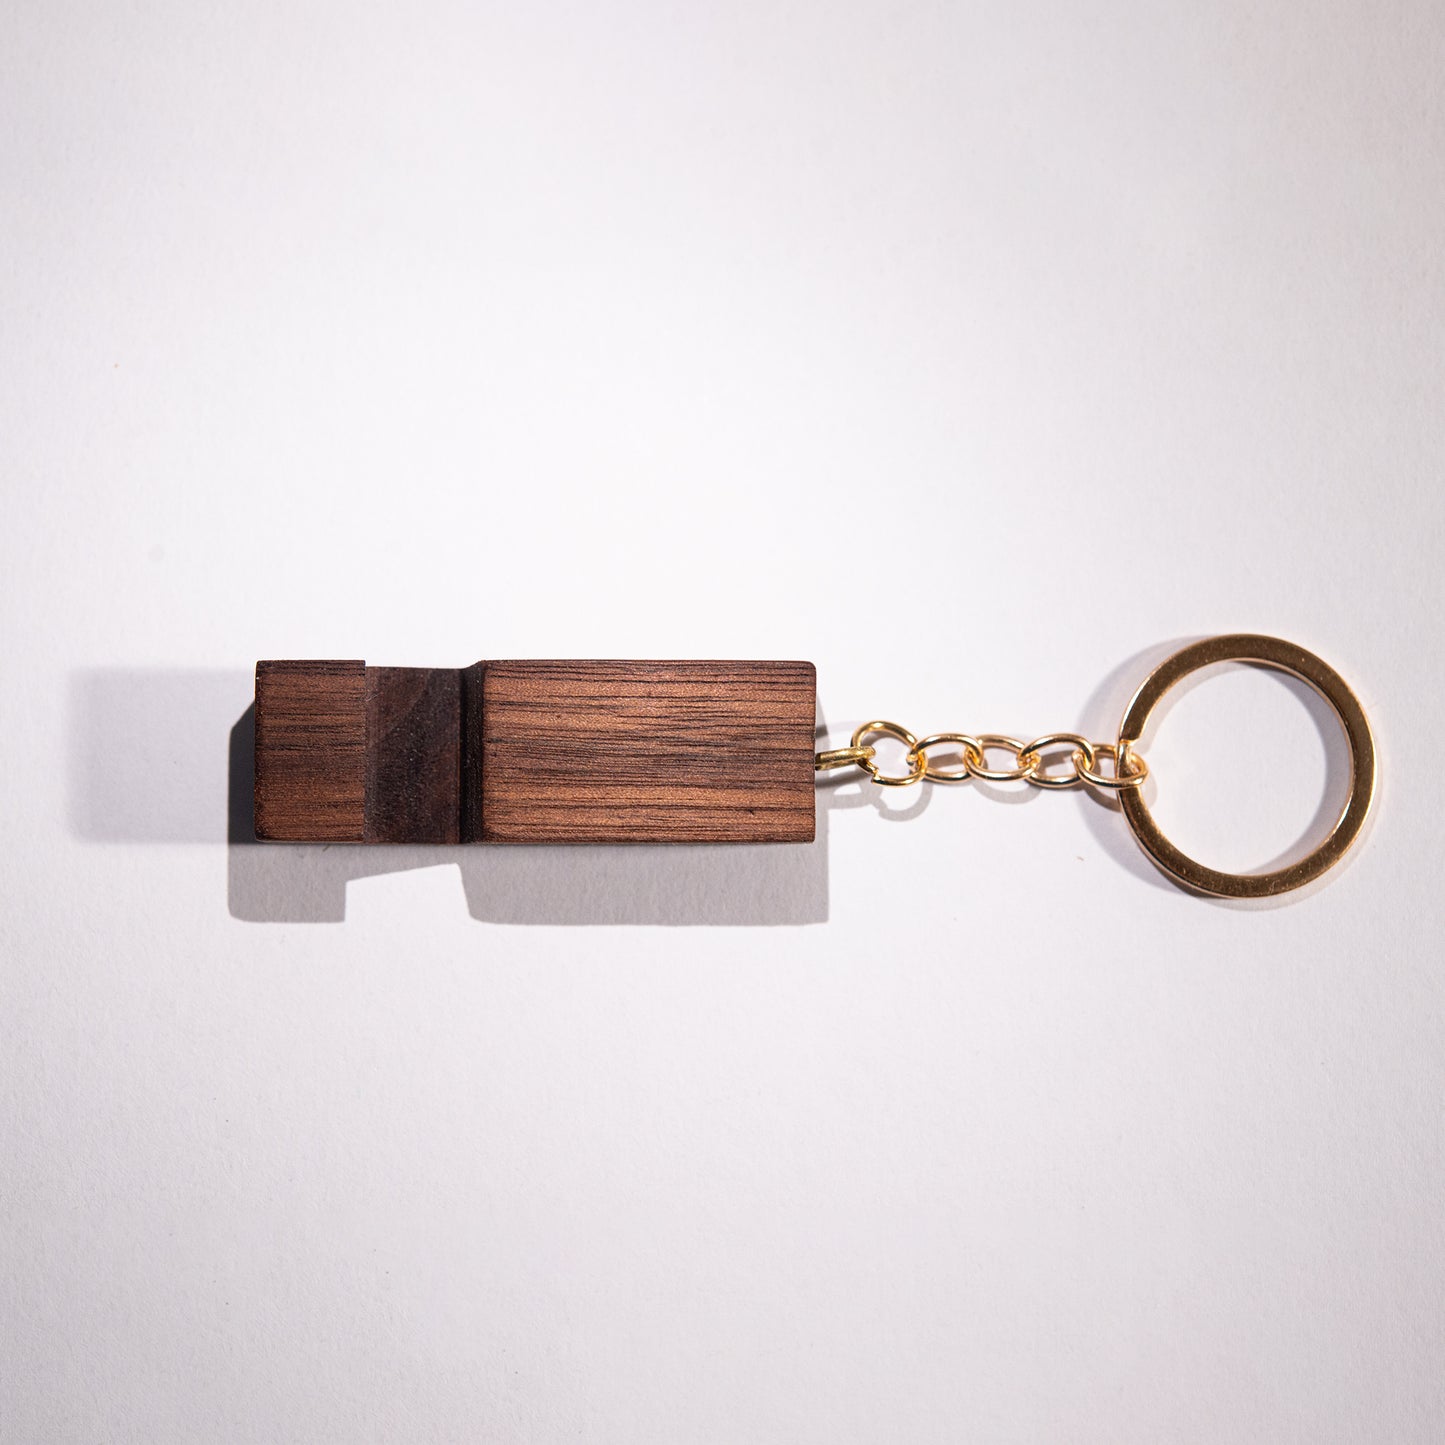 2 in 1 Wooden Keychain + Phone Holder